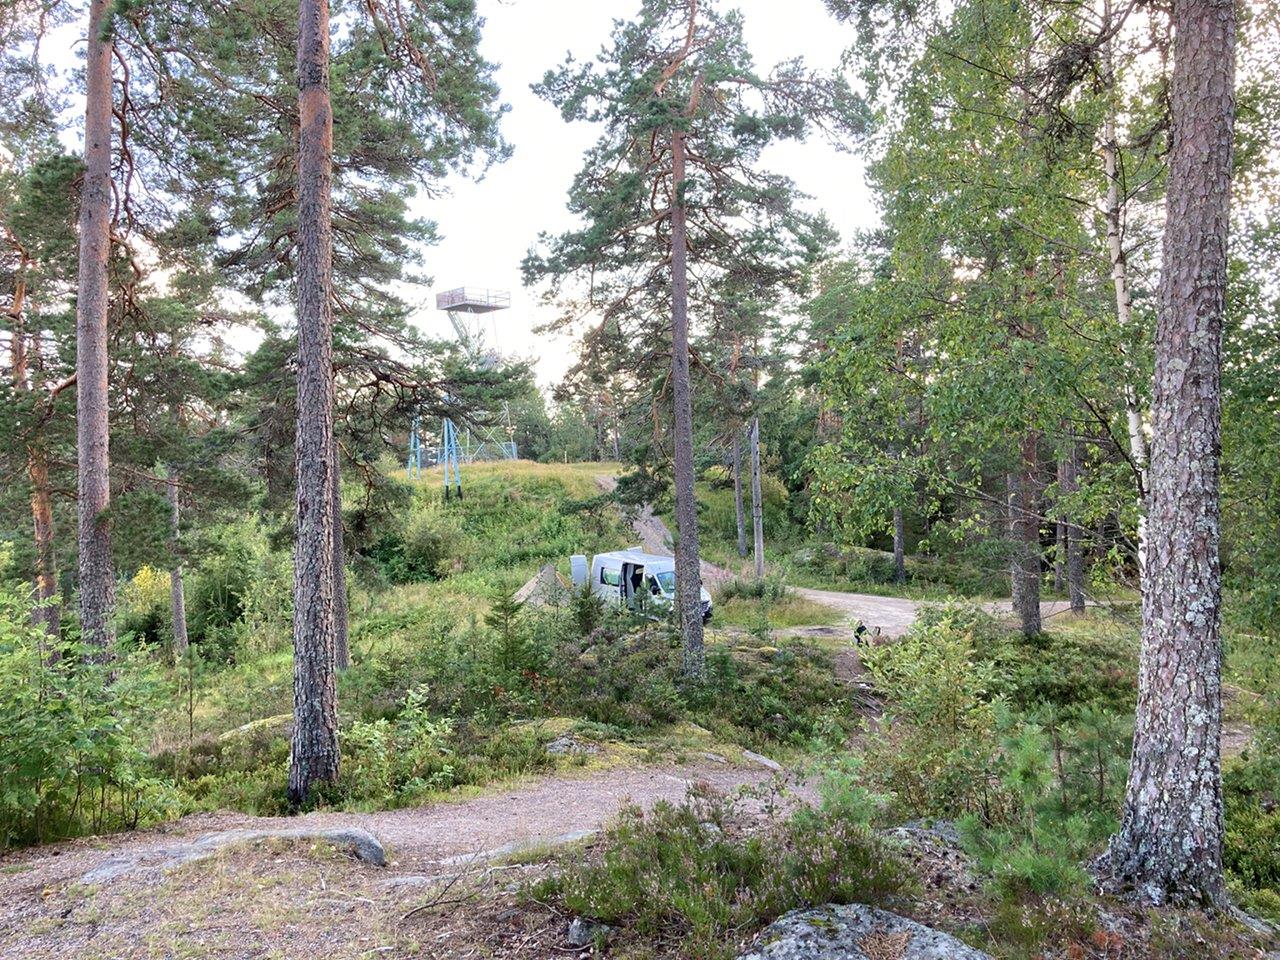 Campertrip met de familie in Zweden: “Onbeschrijfelijk!”